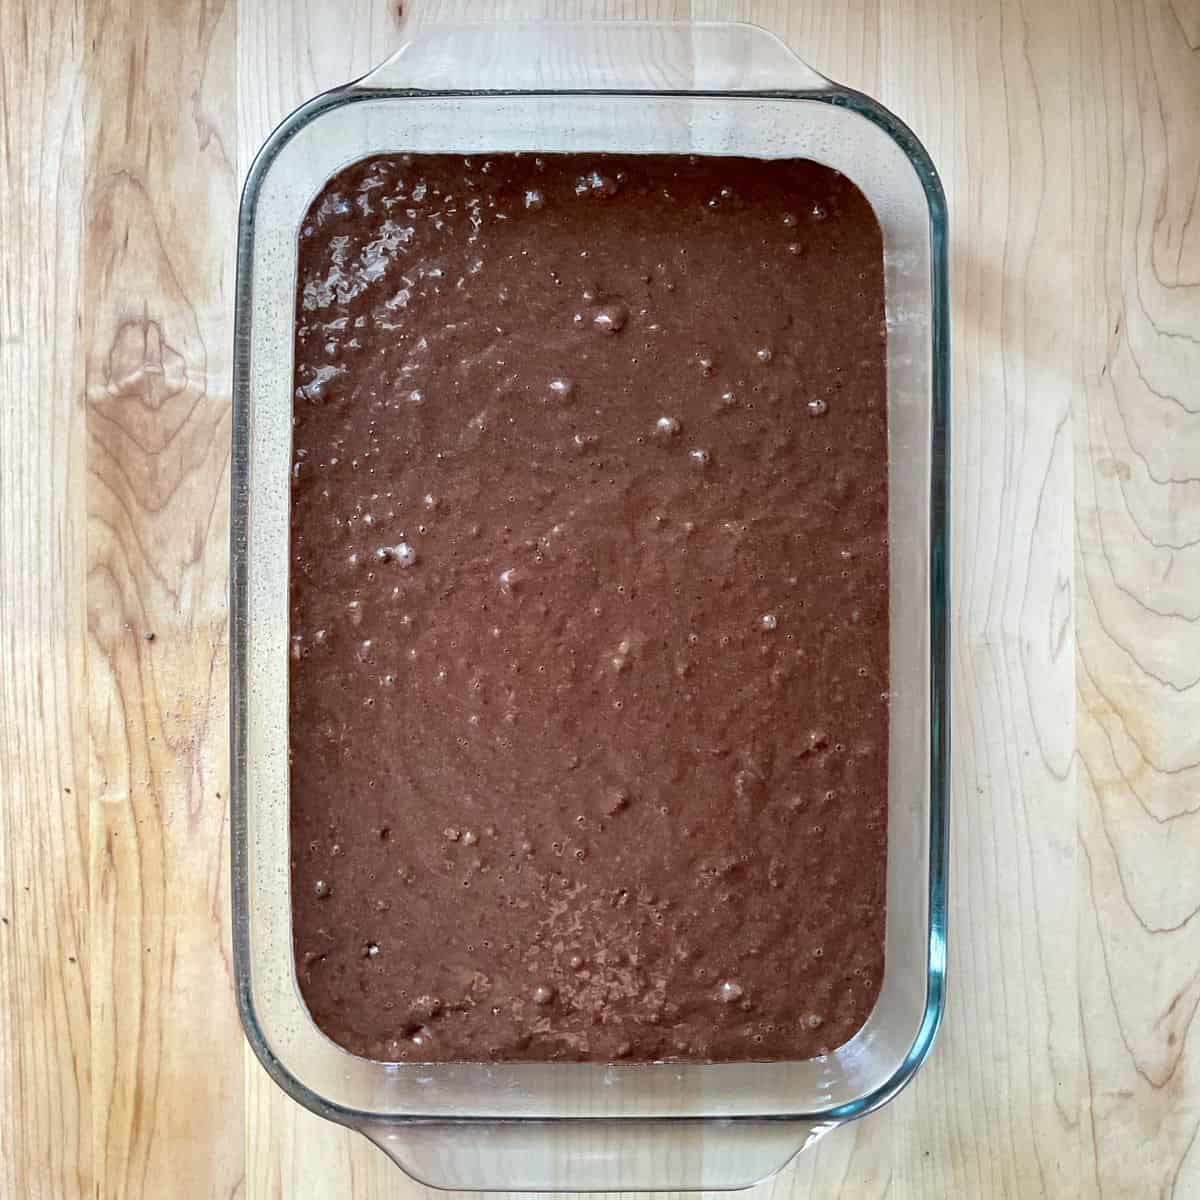 Cake batter in a rectangular baking pan.